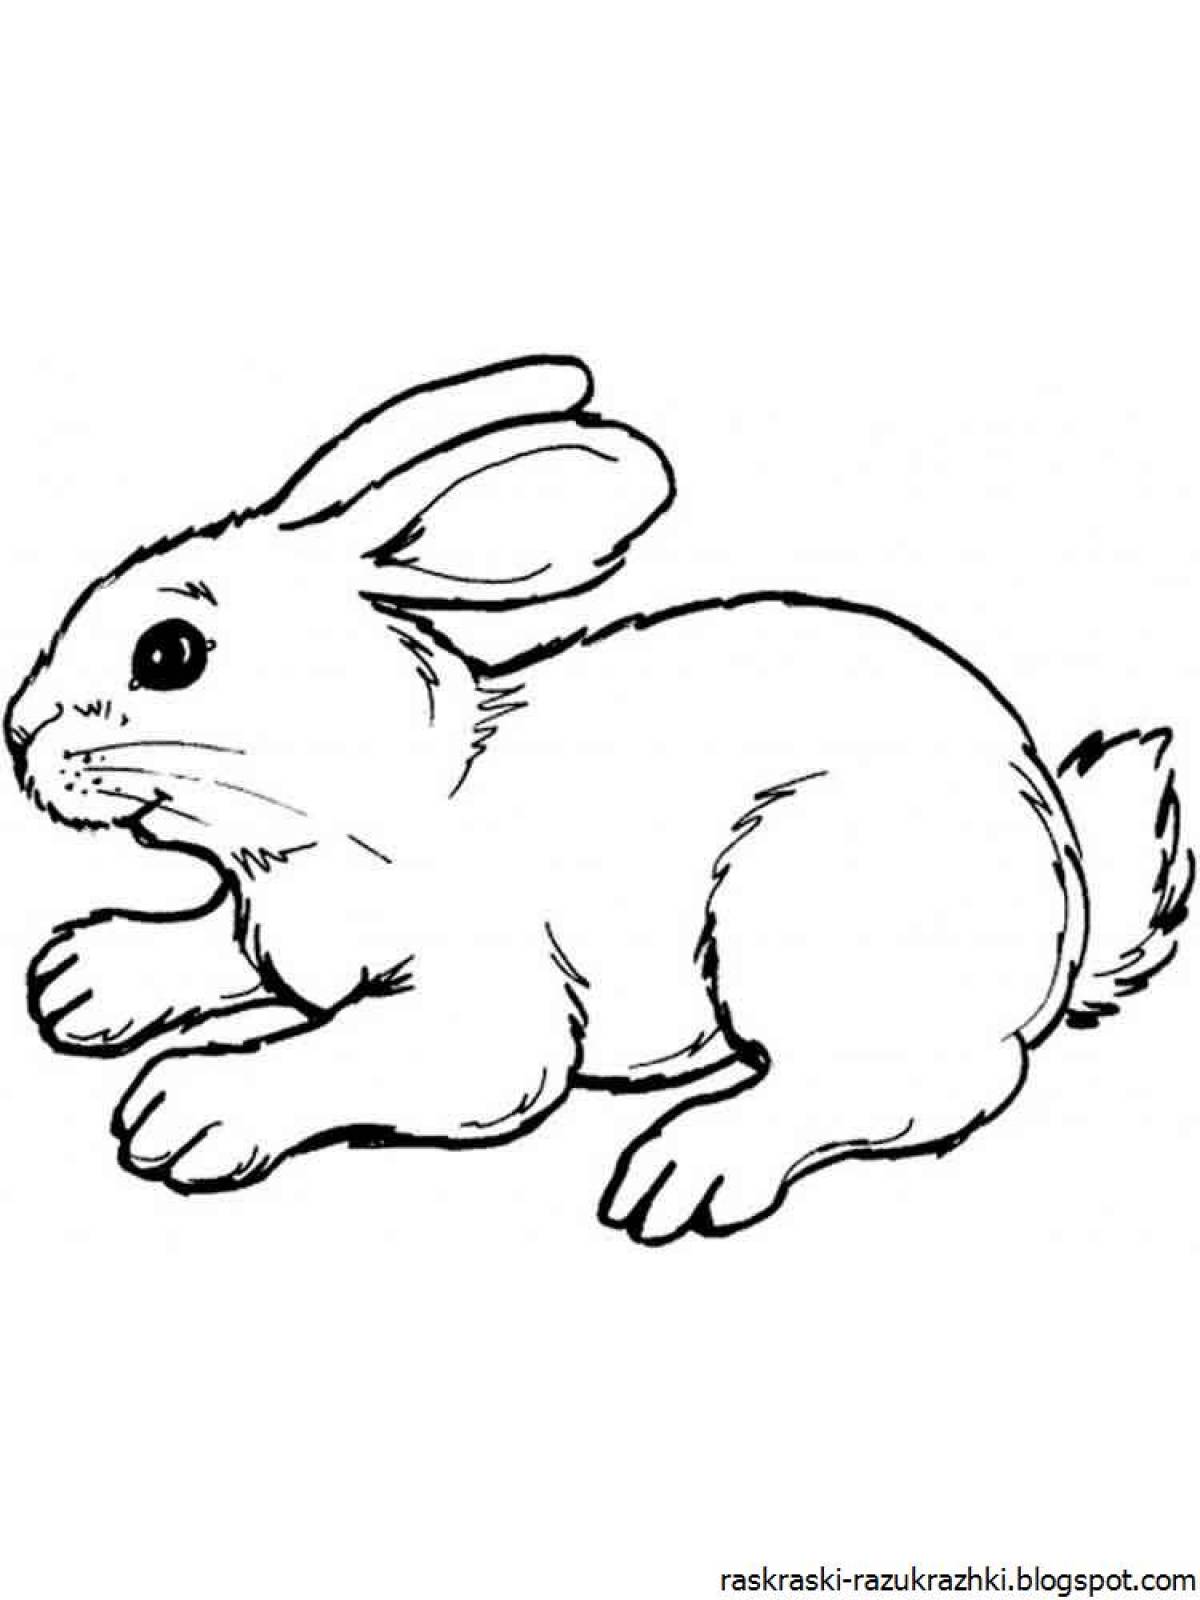 Раскраска для детей 2-3 года простой заяц распечатать